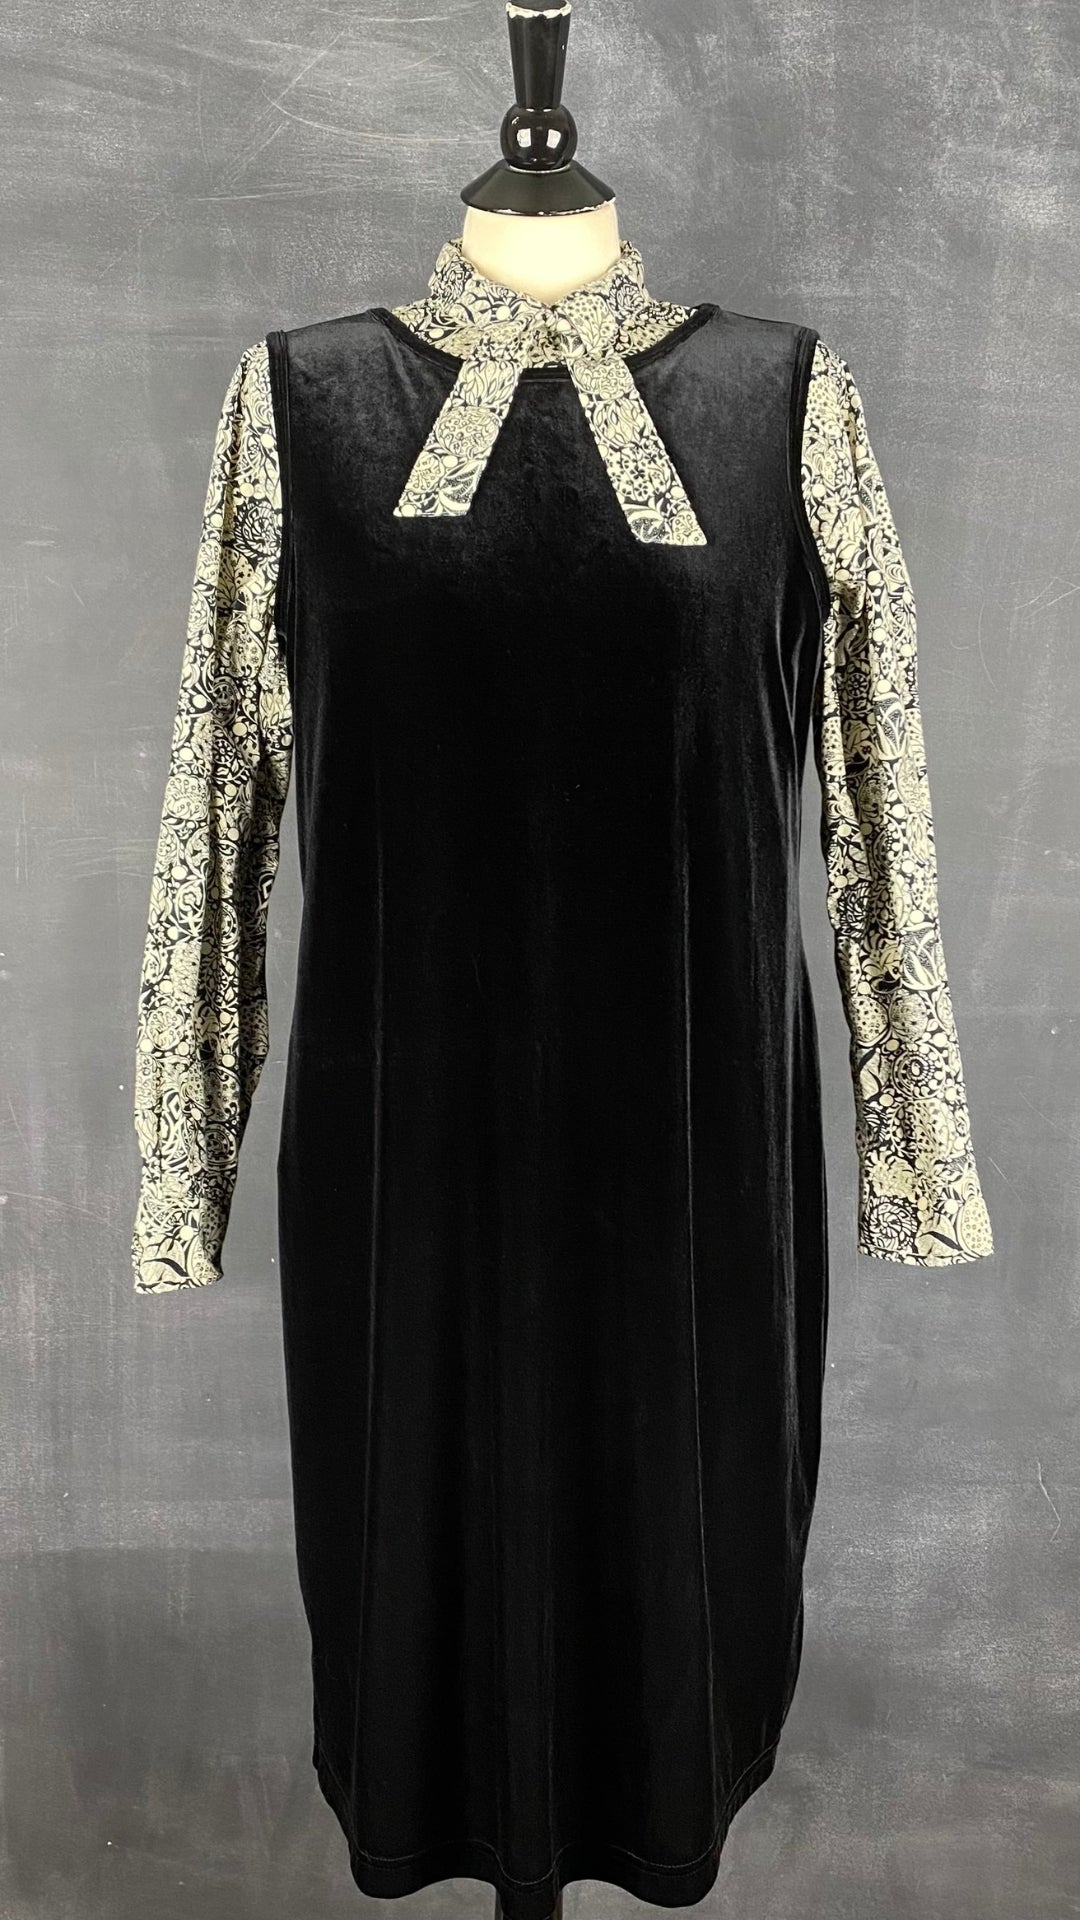 Robe velours noire sans manches Coccoli, taille l-xl. Vue de l'agencement avec le chemisier à motifs floraux crème et noir Liz Clairborne.